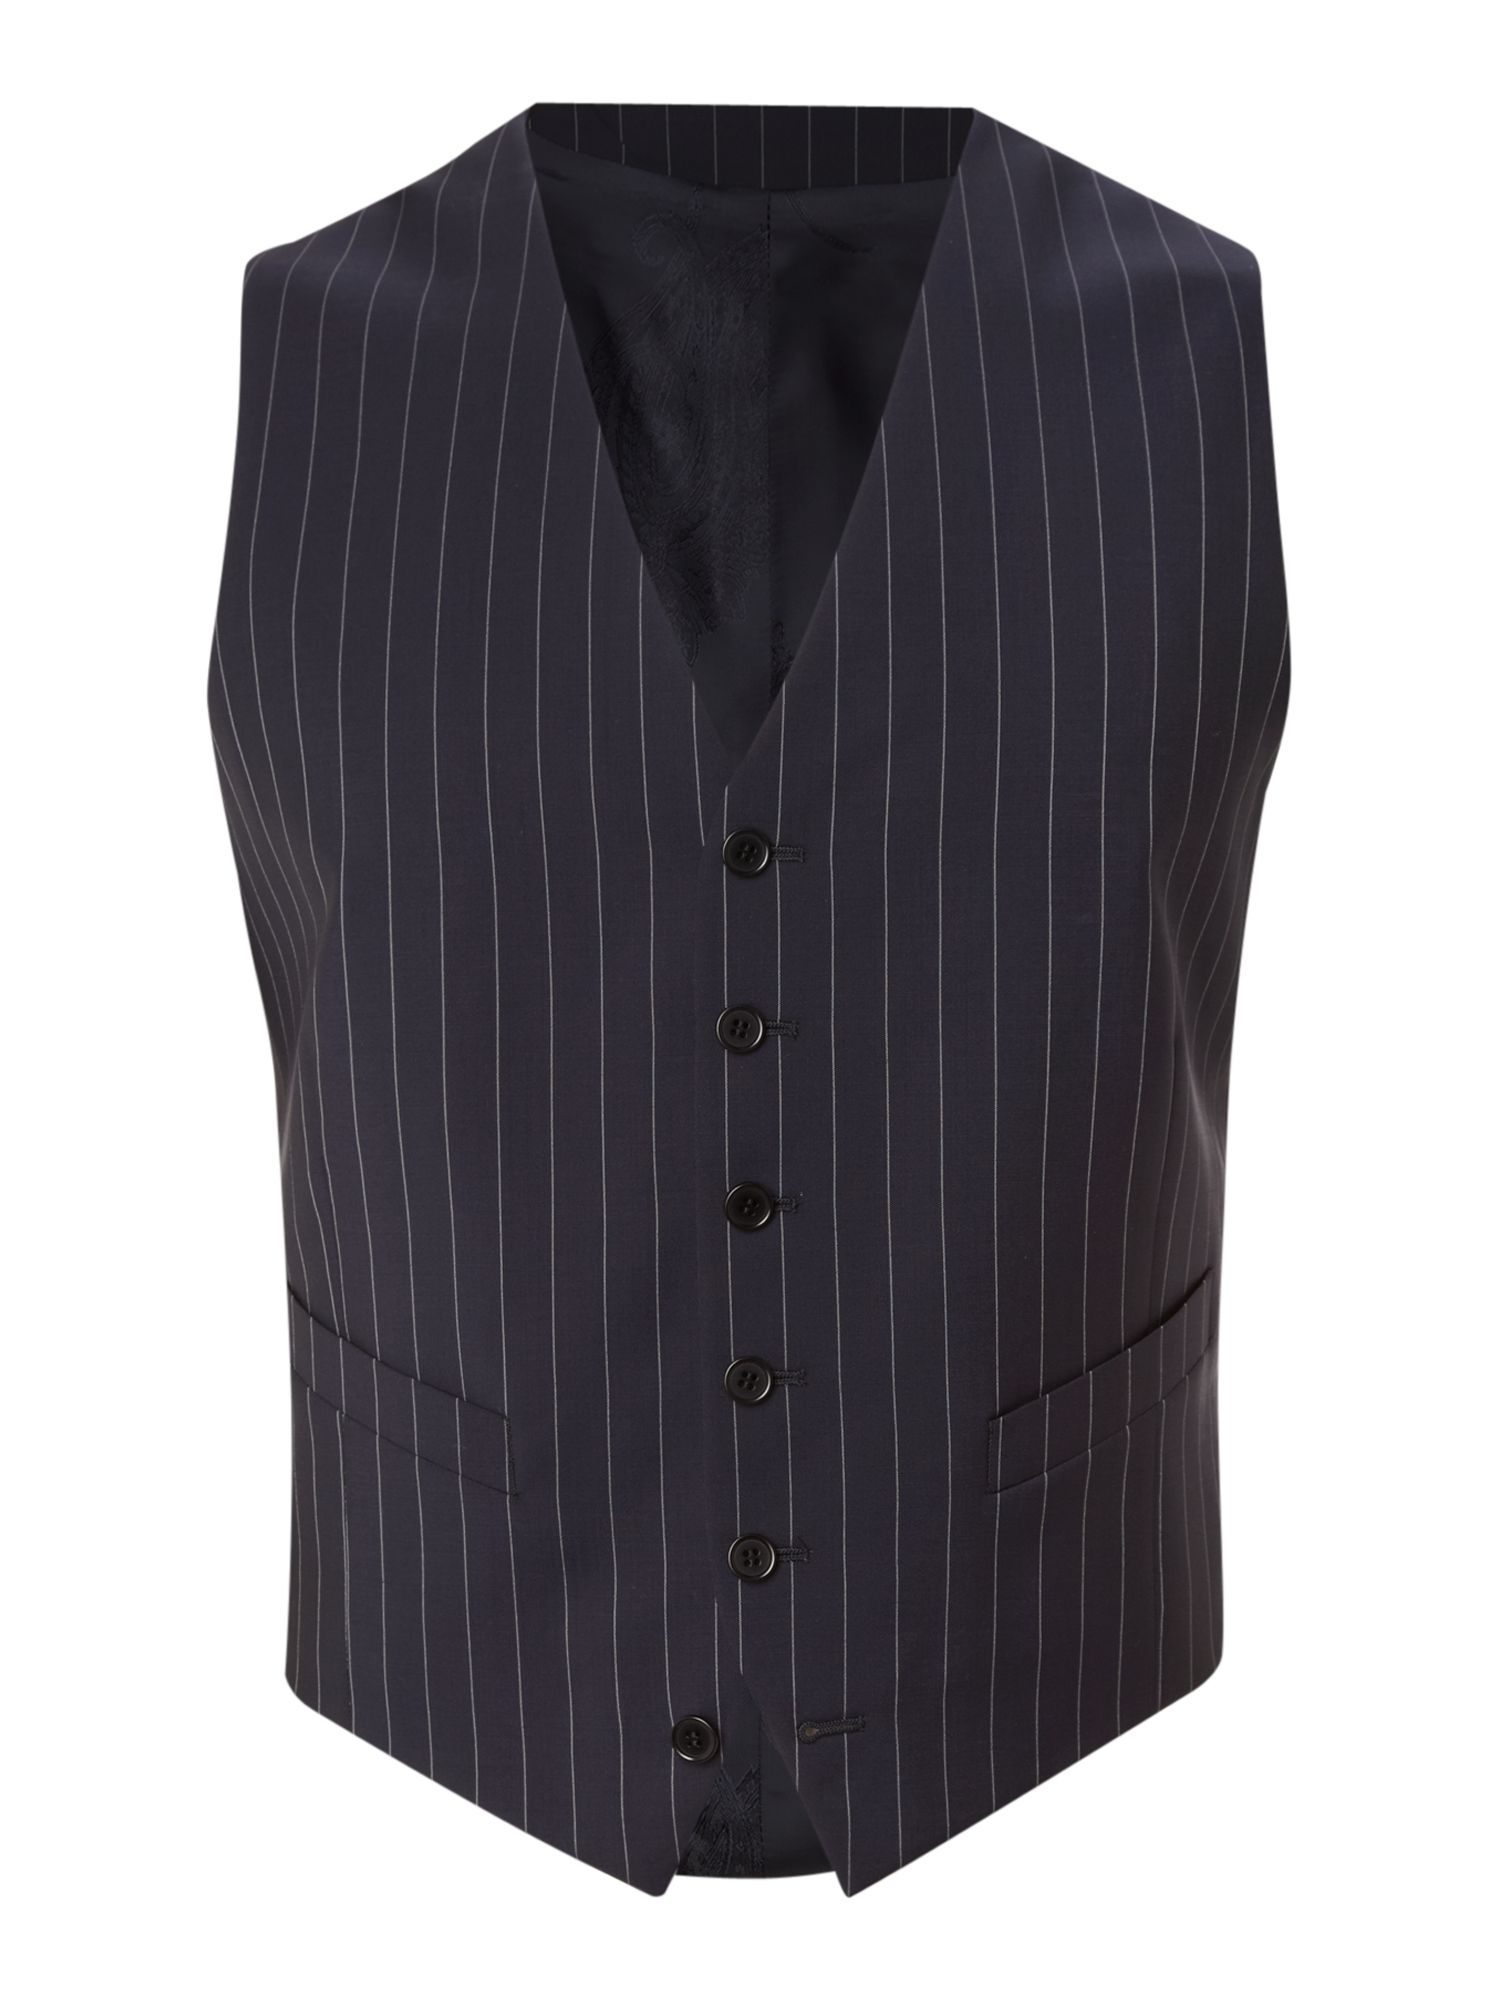 Paul smith Pinstripe Waistcoat in Gray for Men | Lyst